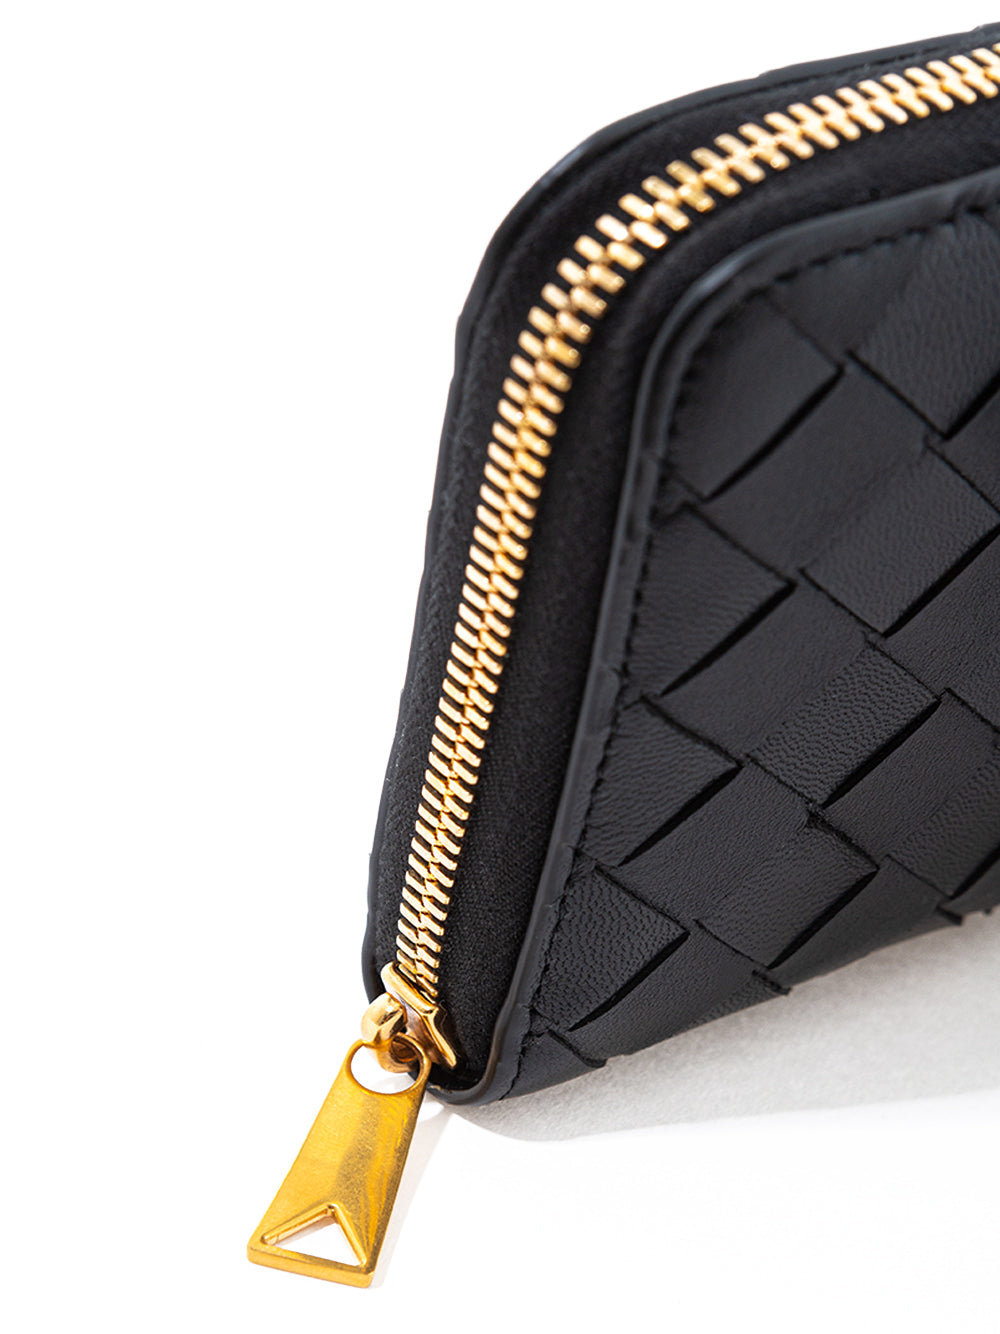 Elegant Intreccio Leather Zip Wallet